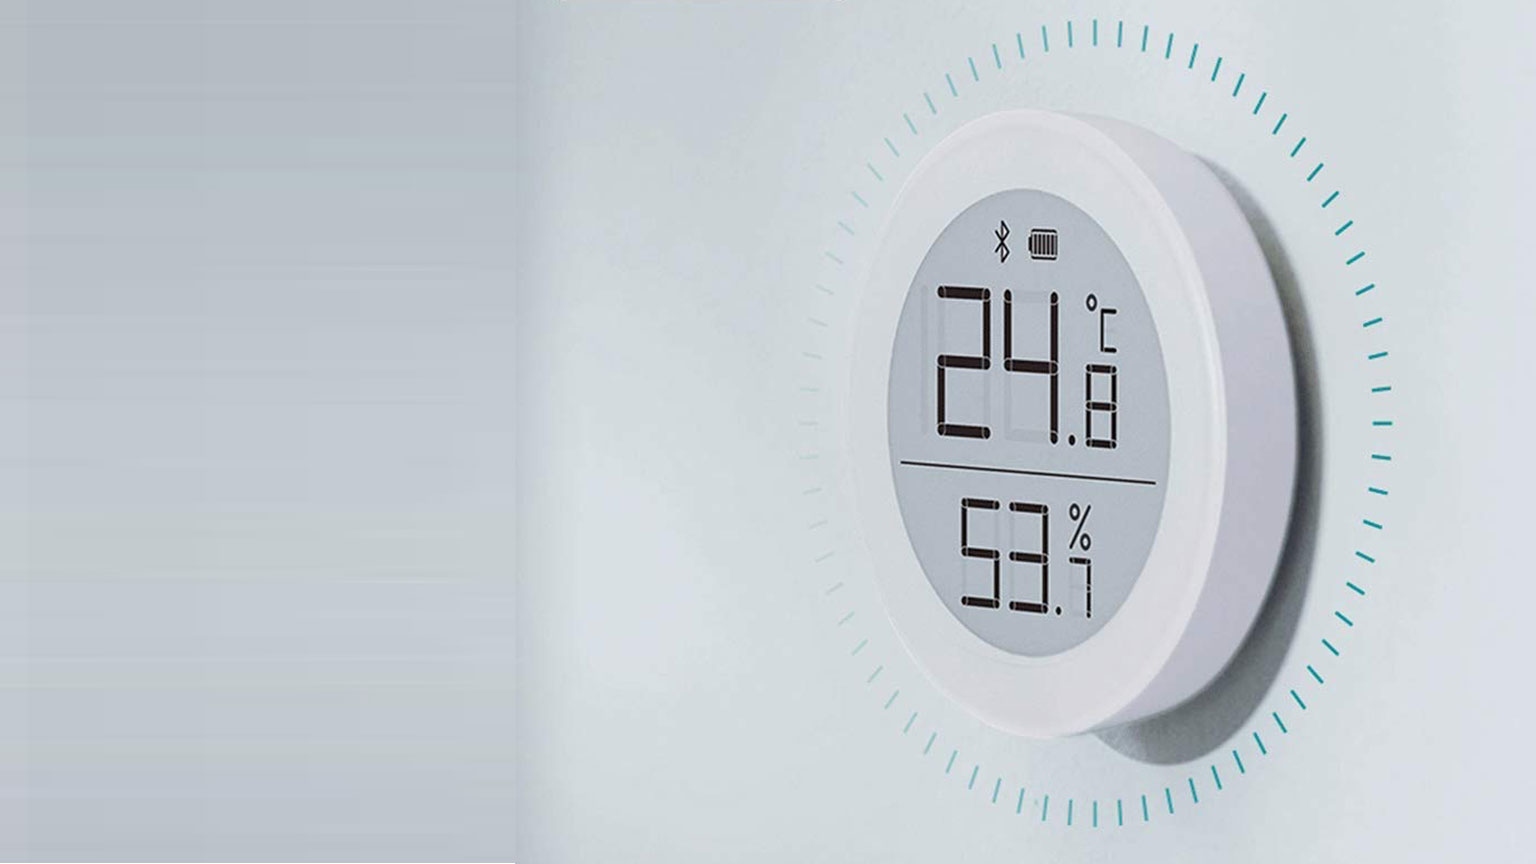 [製品レビュー] Qingping Temp & RH Monitor (HomeKit対応)で室内の温度・湿度をモニターする